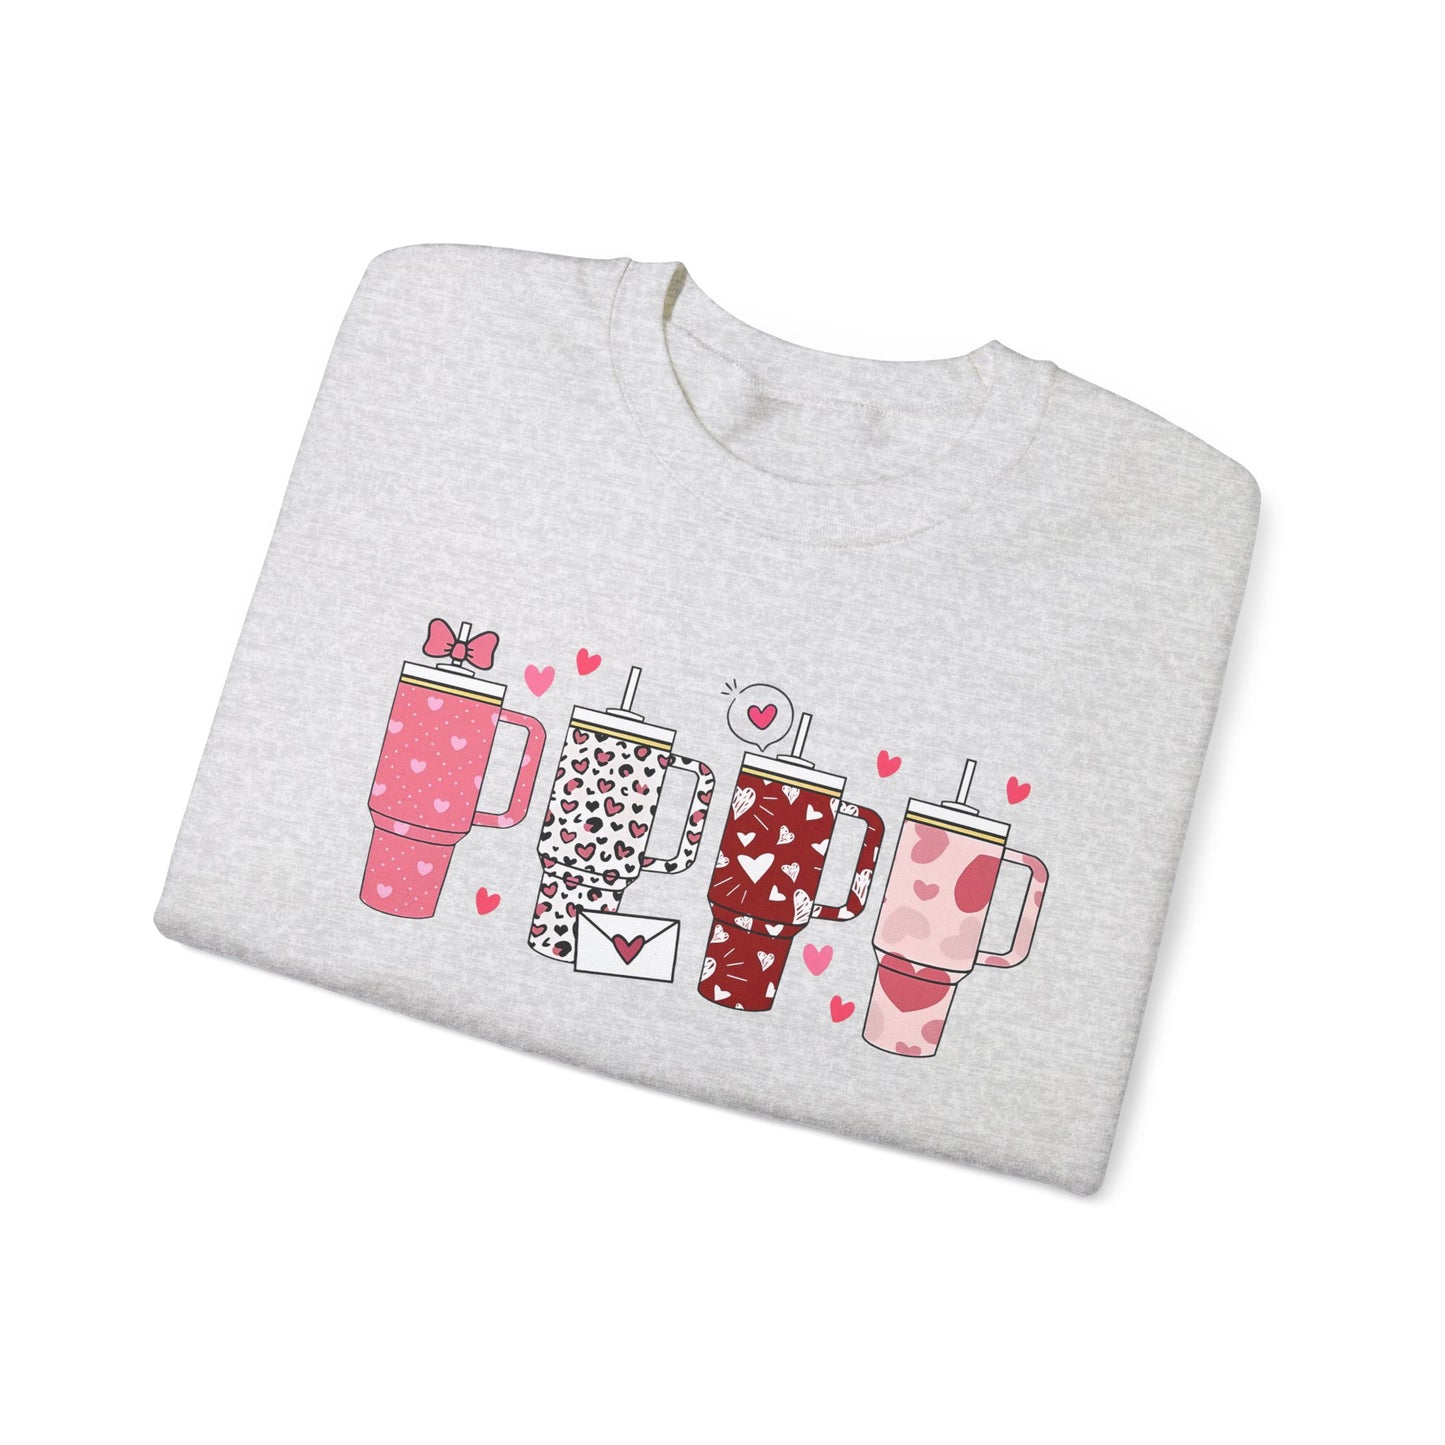 Valentine's Day Trendy Cup Sweatshirt - Gifts For Her - Trending Sweatshirt